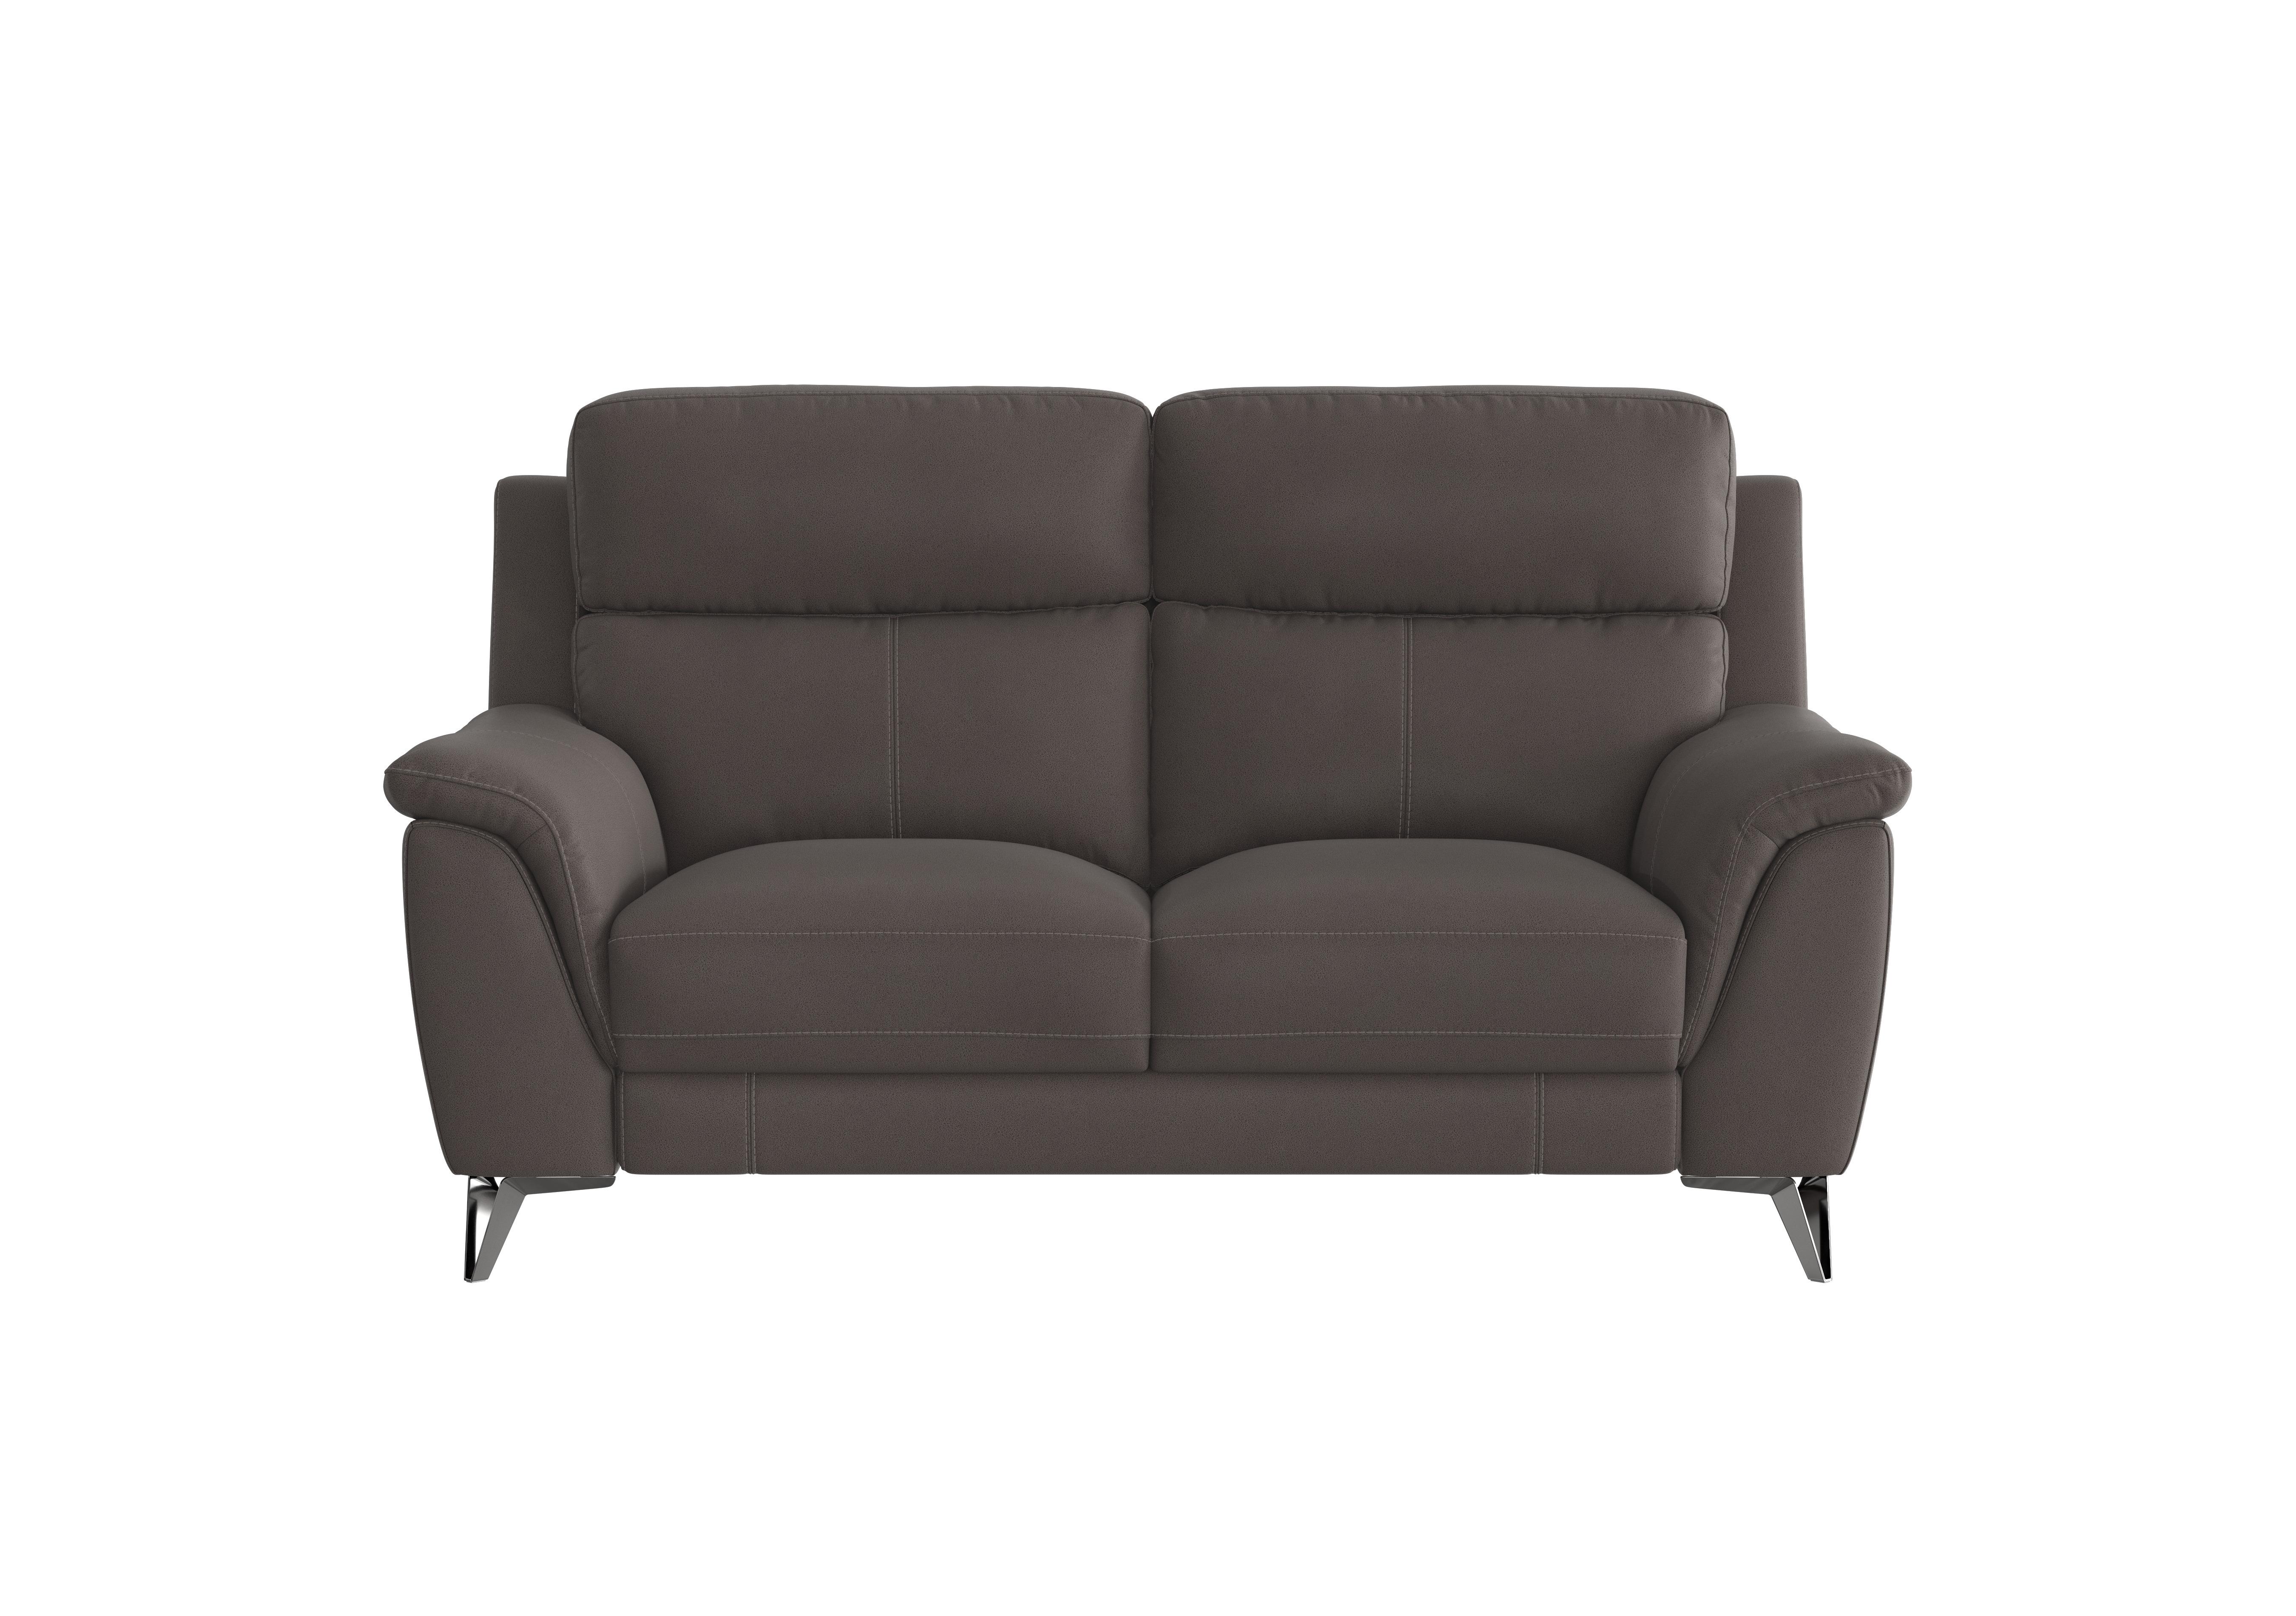 Contempo 2 Seater Fabric Sofa in Bfa-Blj-R16 Grey on Furniture Village